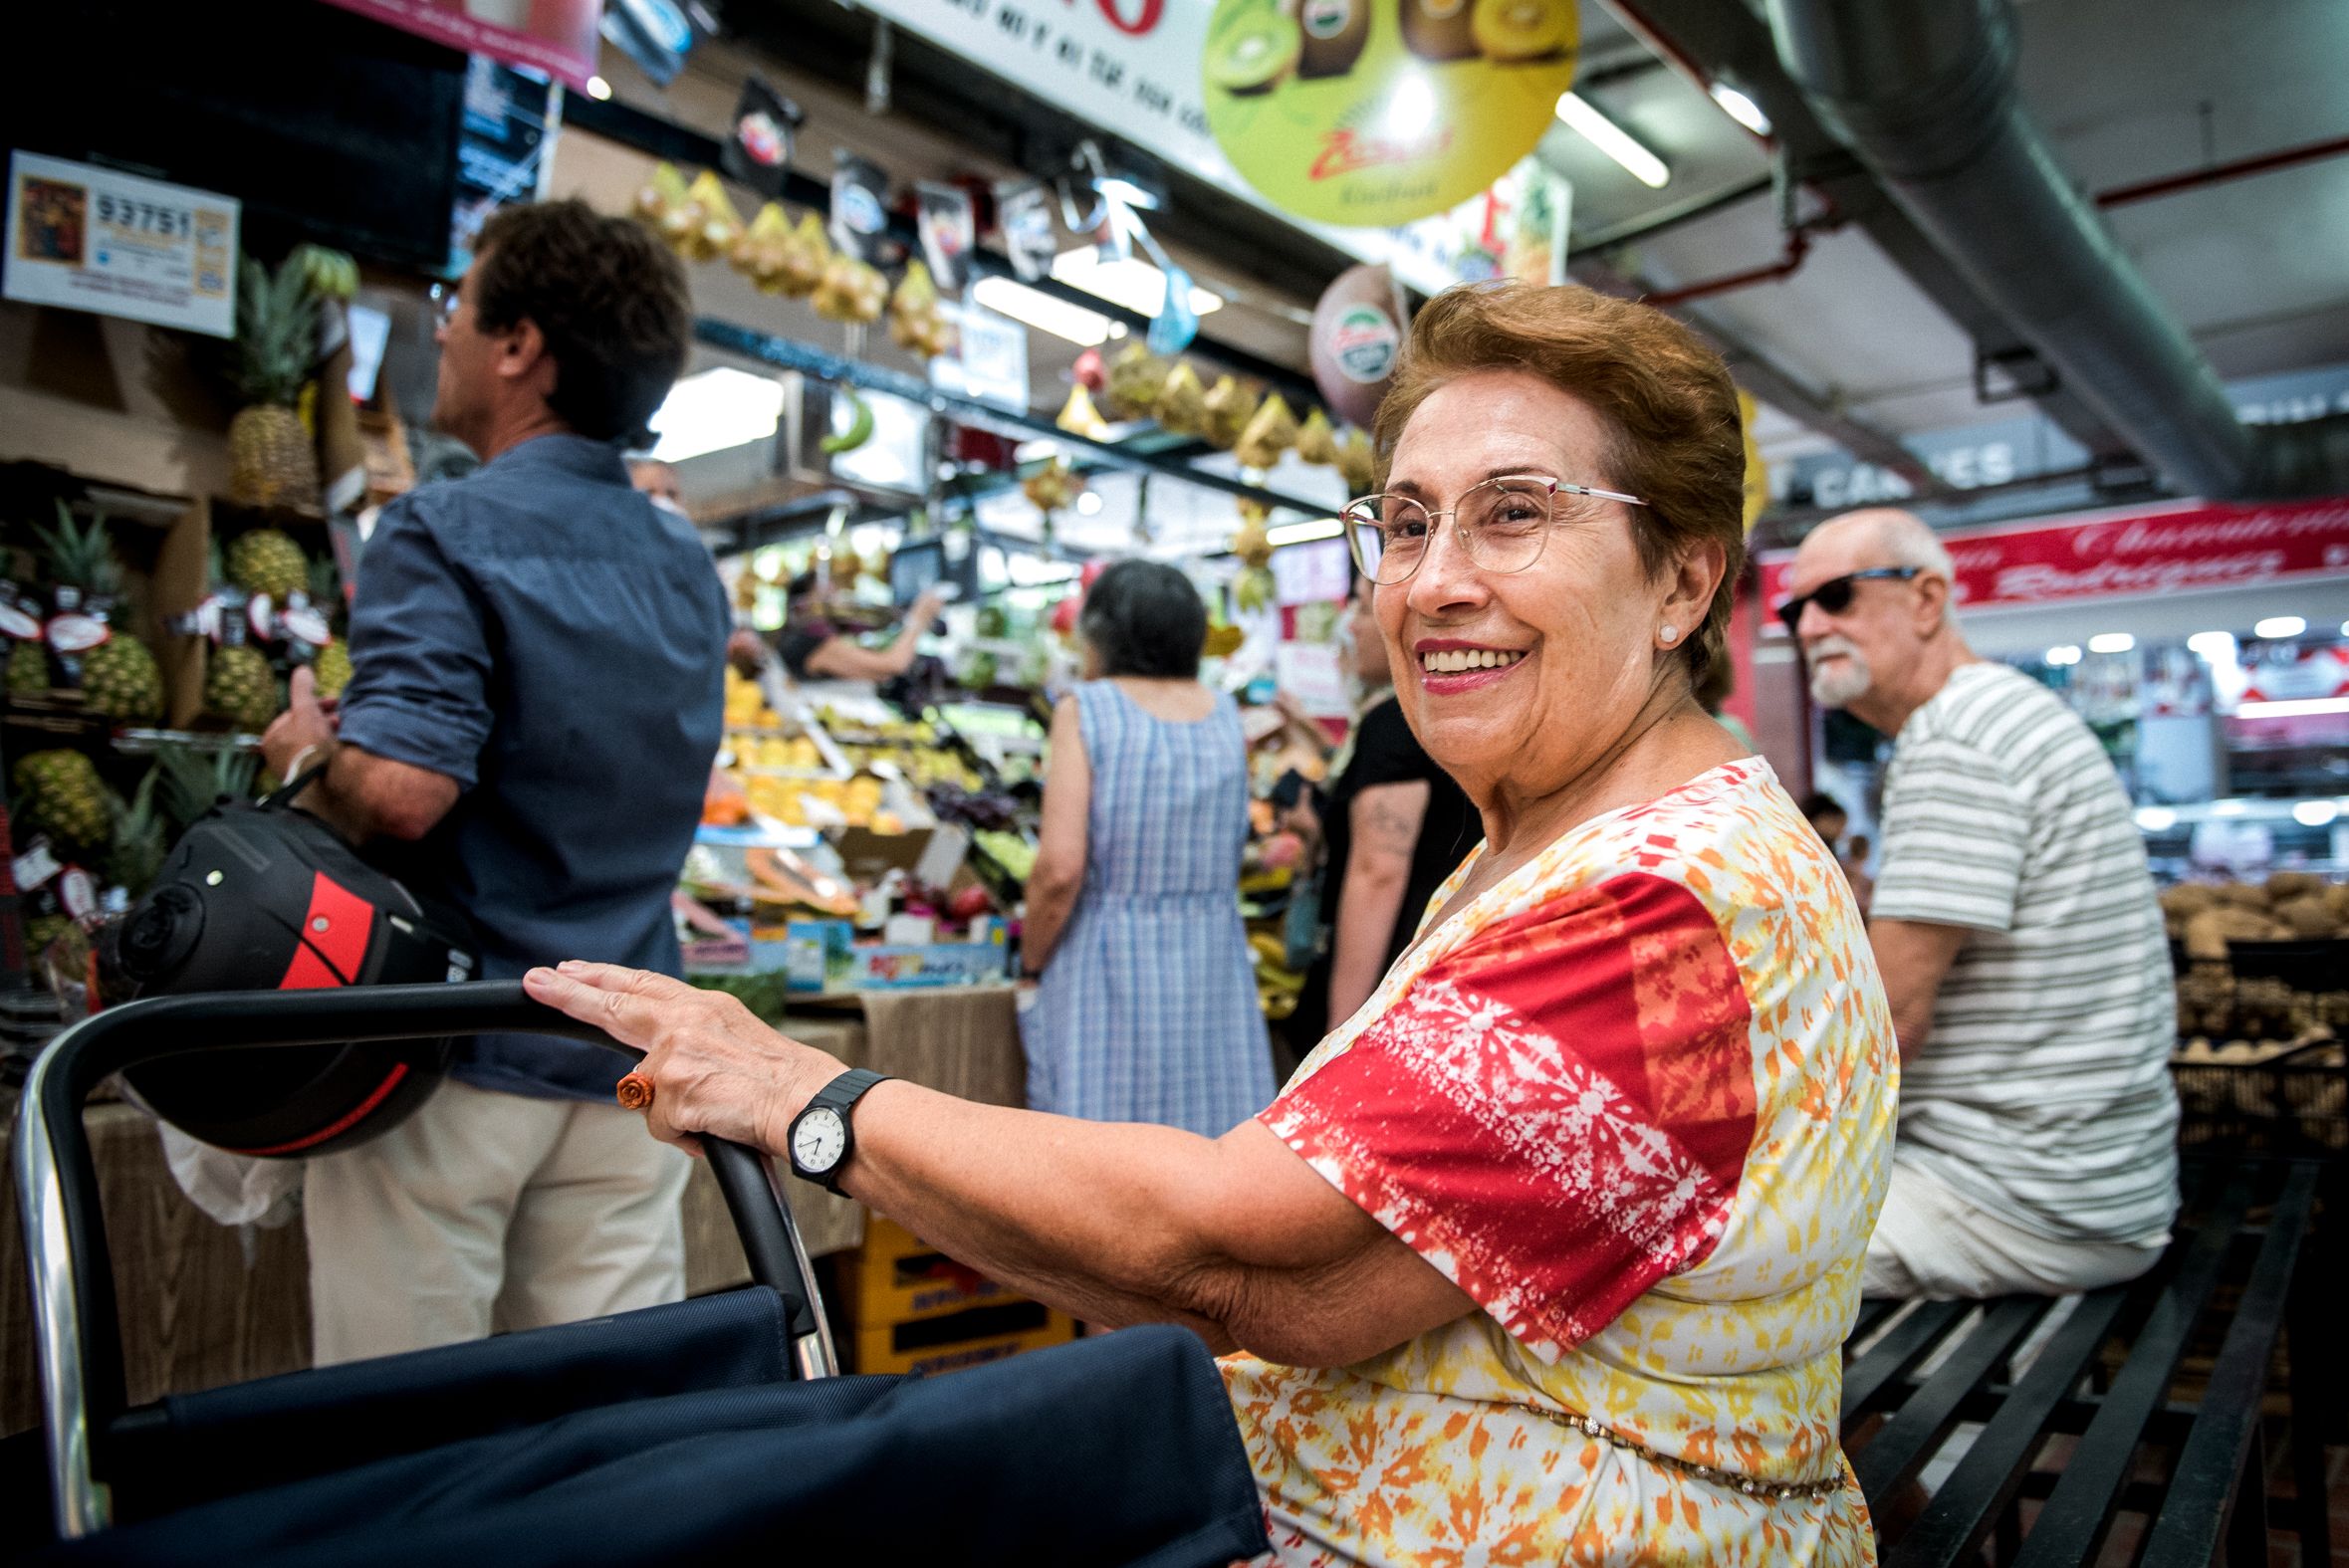 Mari Carmen espera en un asiento su turno en una frutería del mercado del Tiro de Línea.